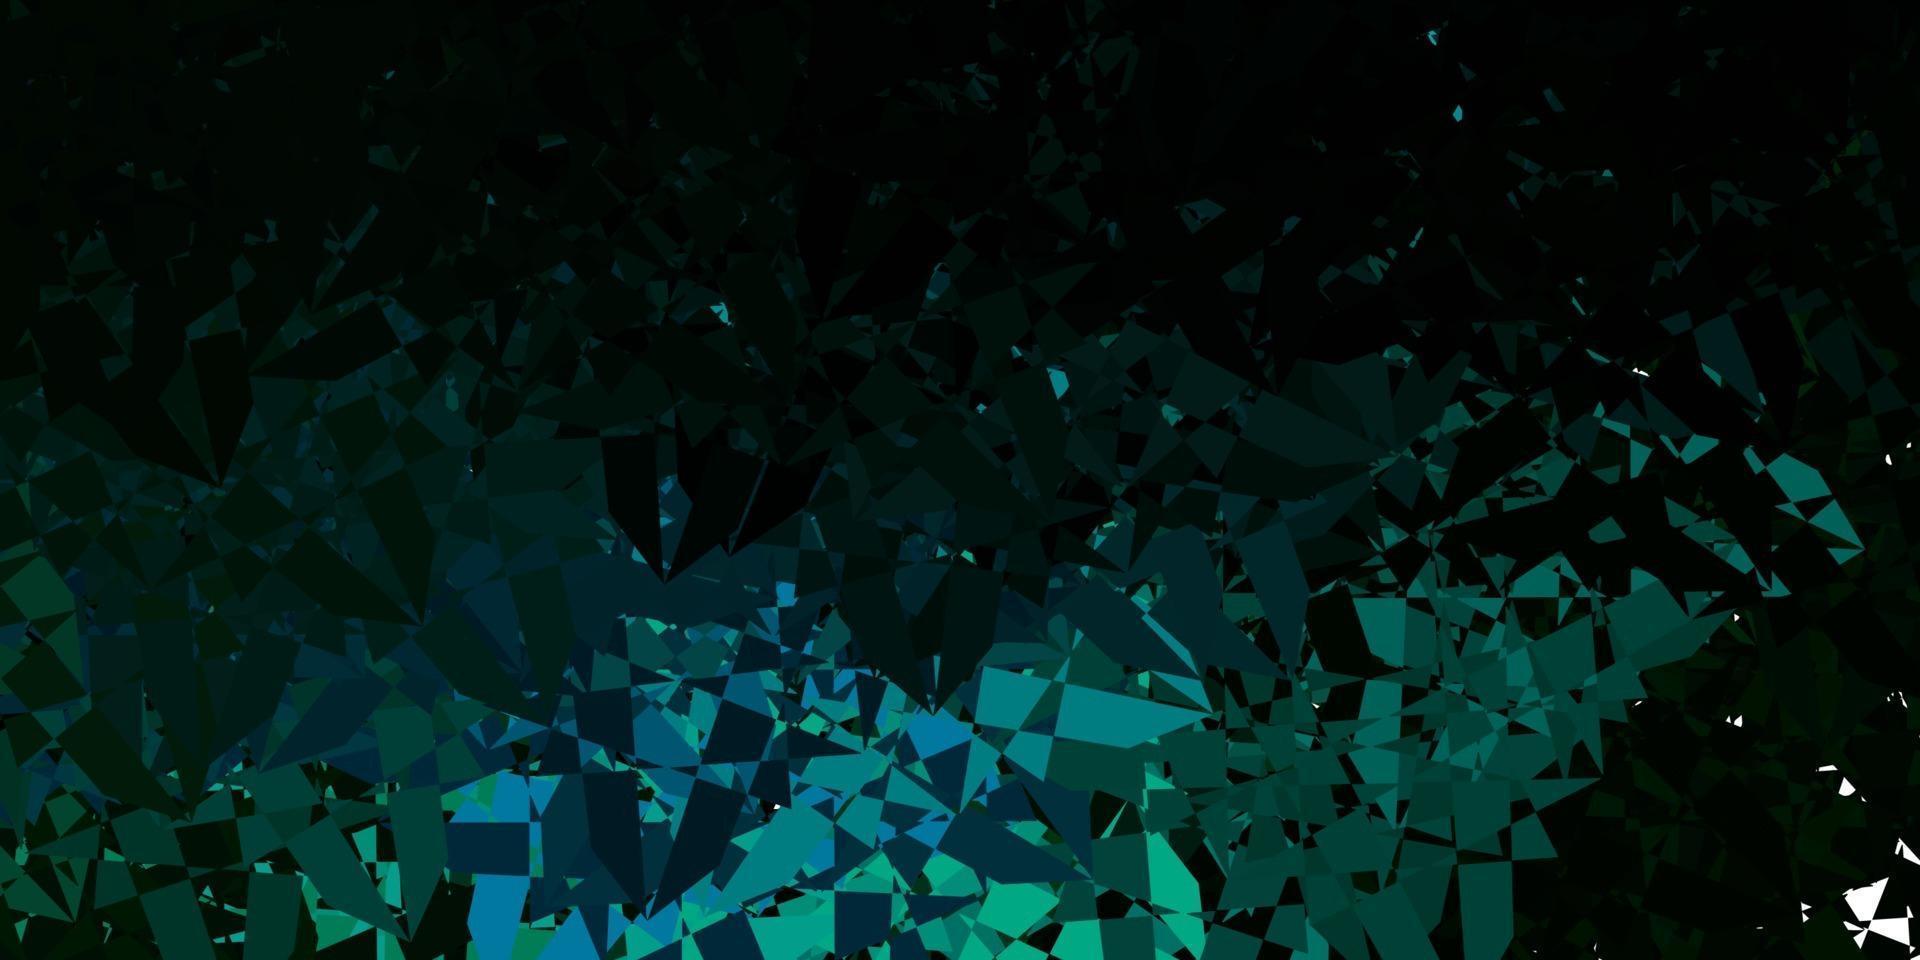 textura vector azul e verde escuro com triângulos aleatórios.